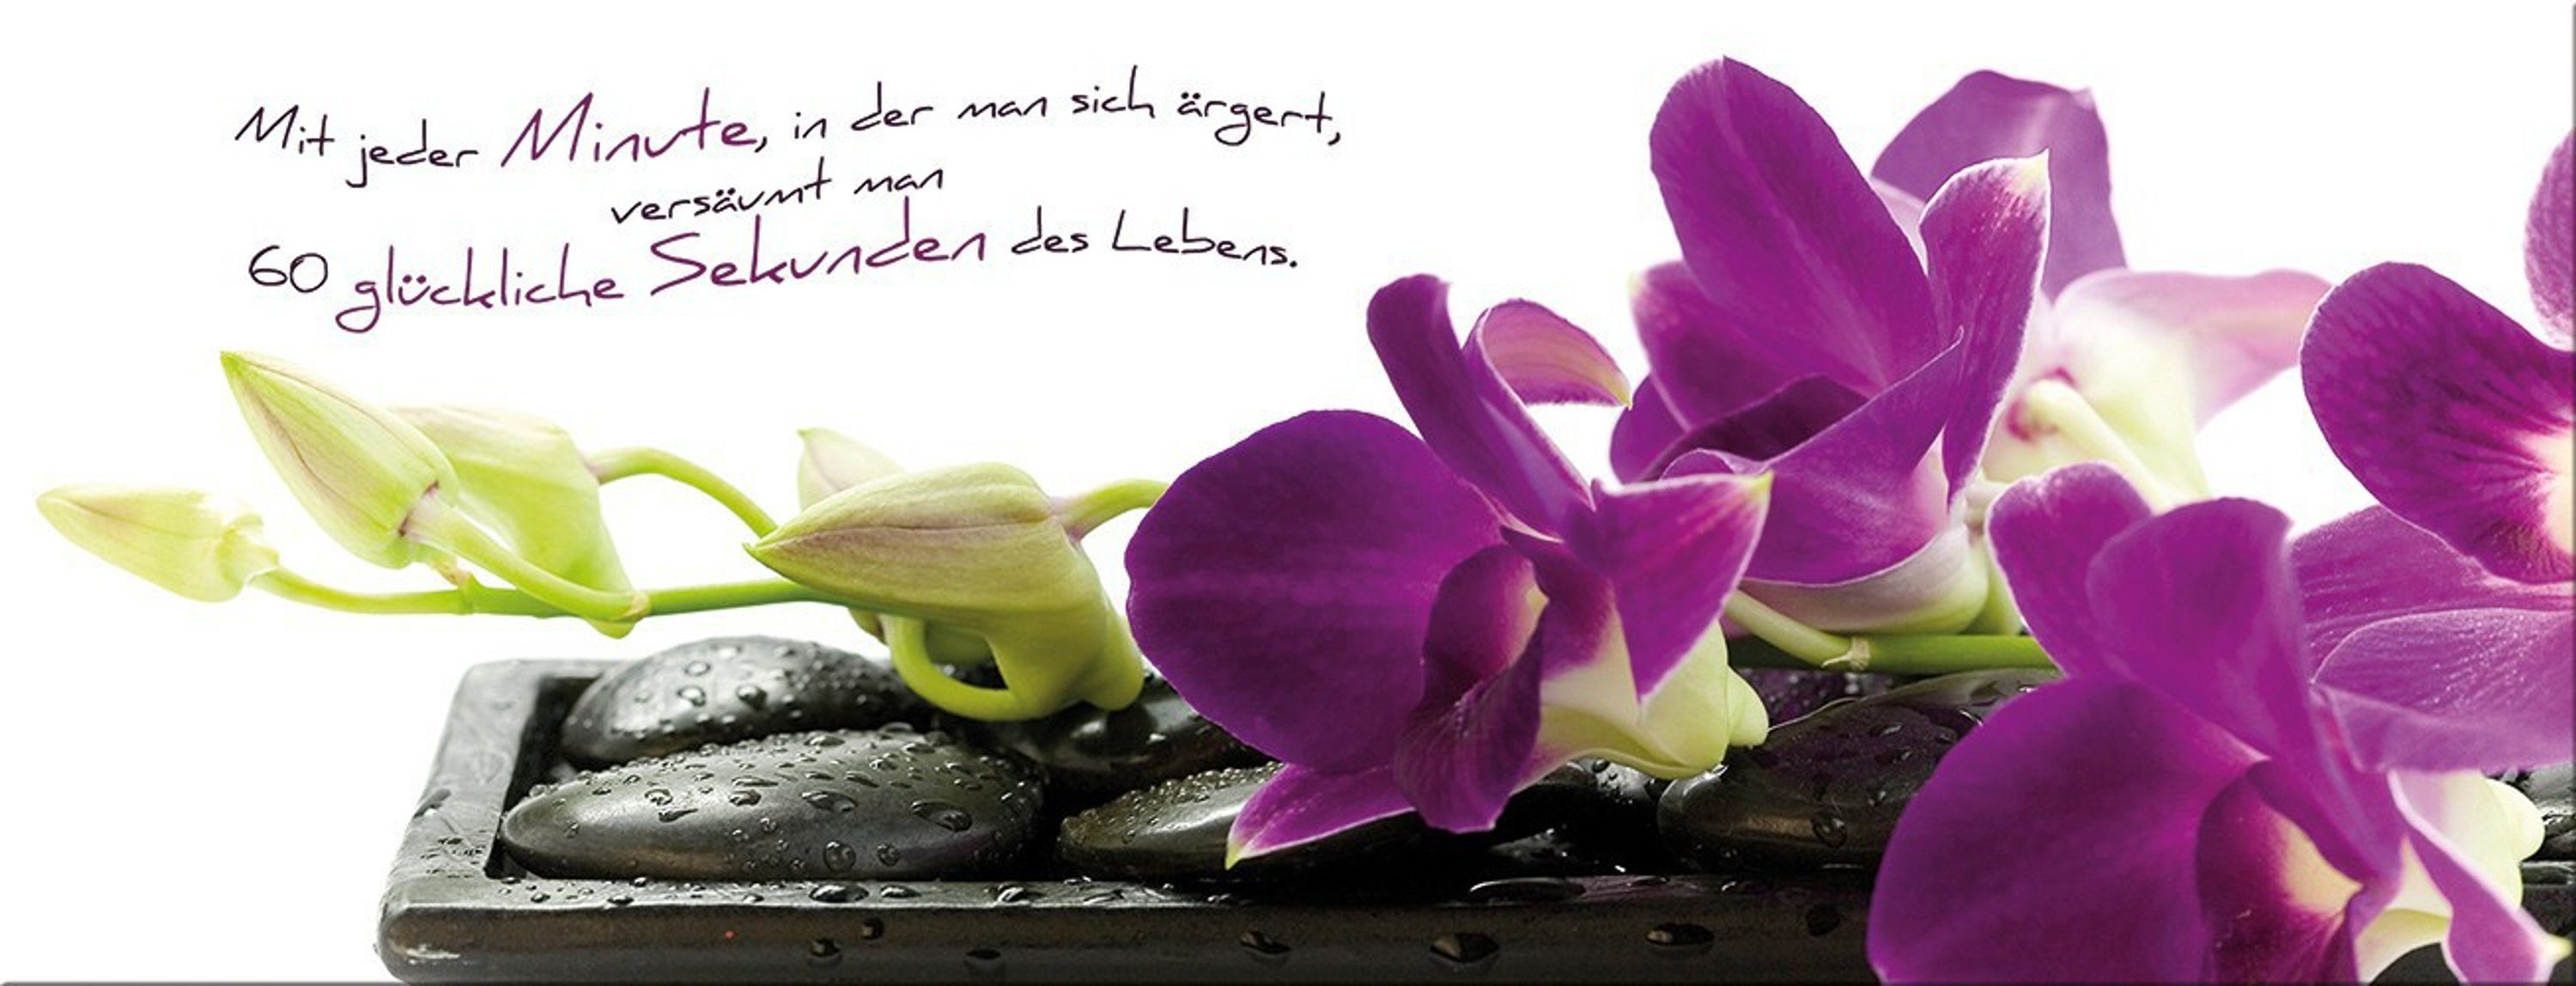 artissimo Glasbild Glasbild 80x30cm Bild Spa, Zen Sprüche: Spruch Glas Orchidee Lebensweisheit aus